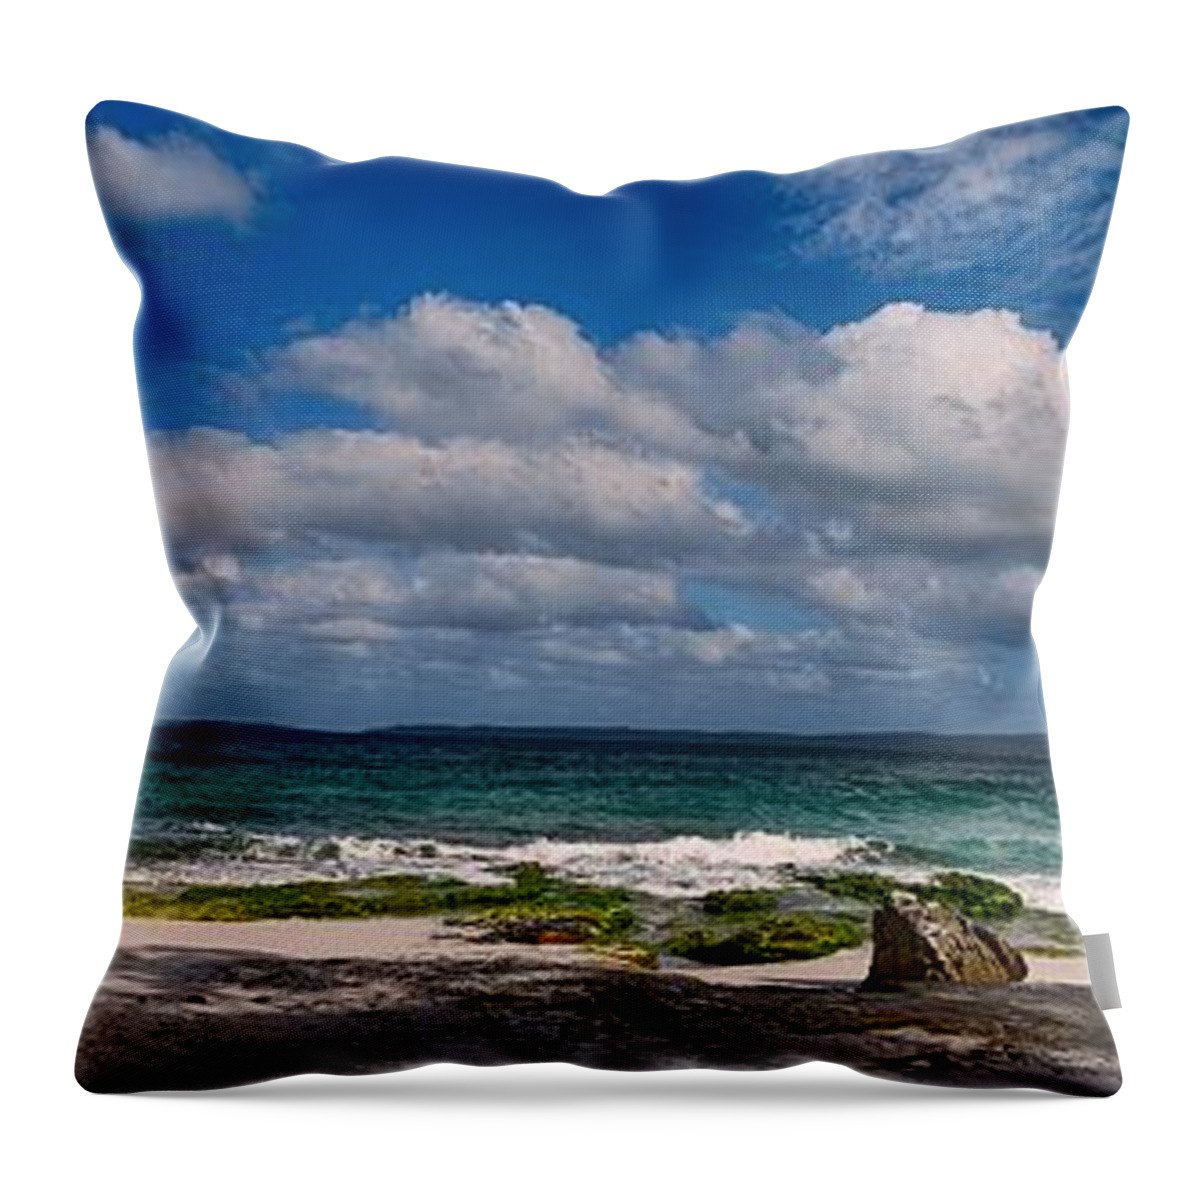 Blenheim Beach Throw Pillow featuring the photograph Blenheim Beach by Andrei SKY